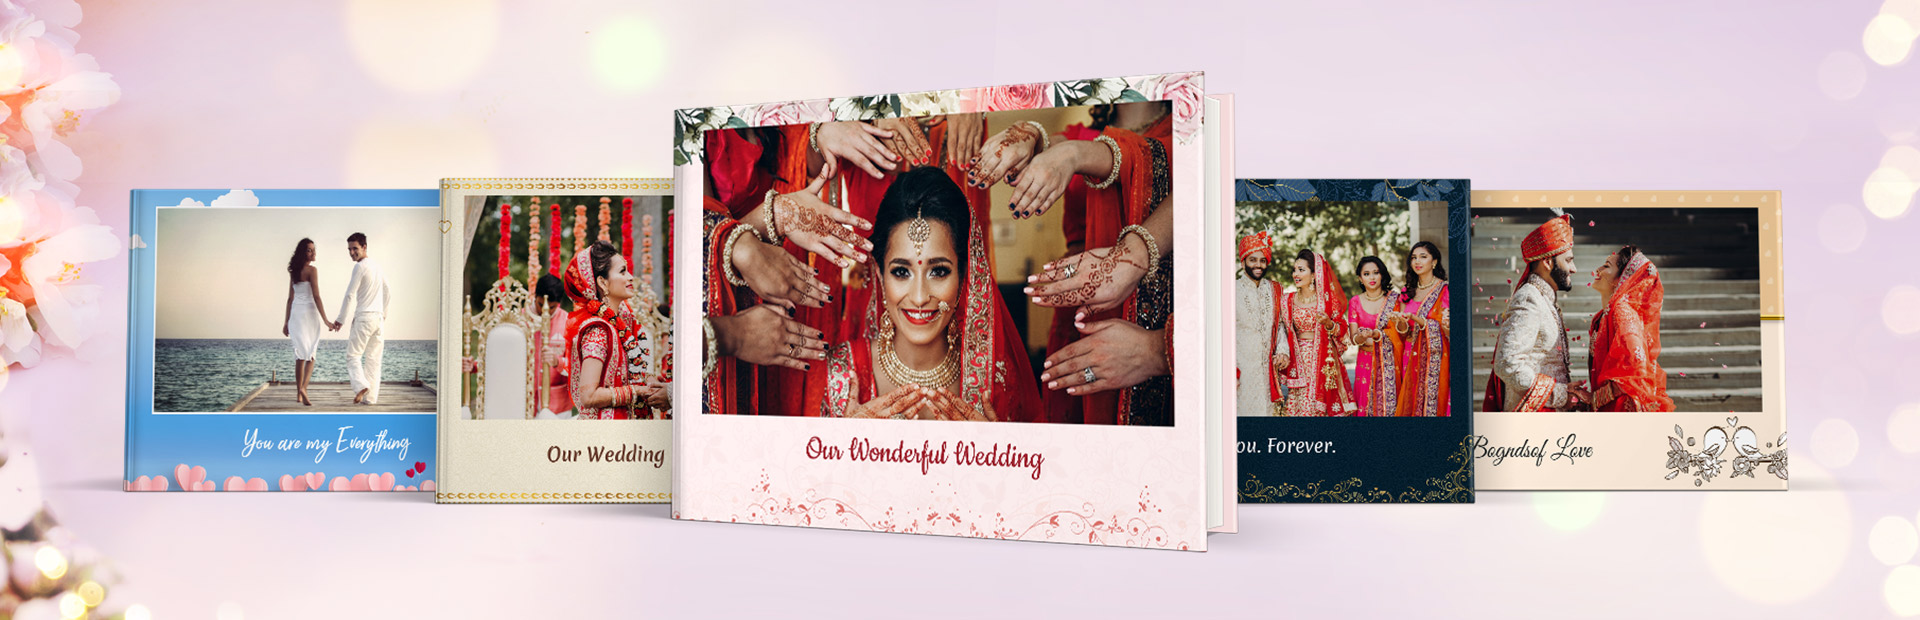 How To Design A Wedding Album Photo Book Ideas Papier - Vrogue